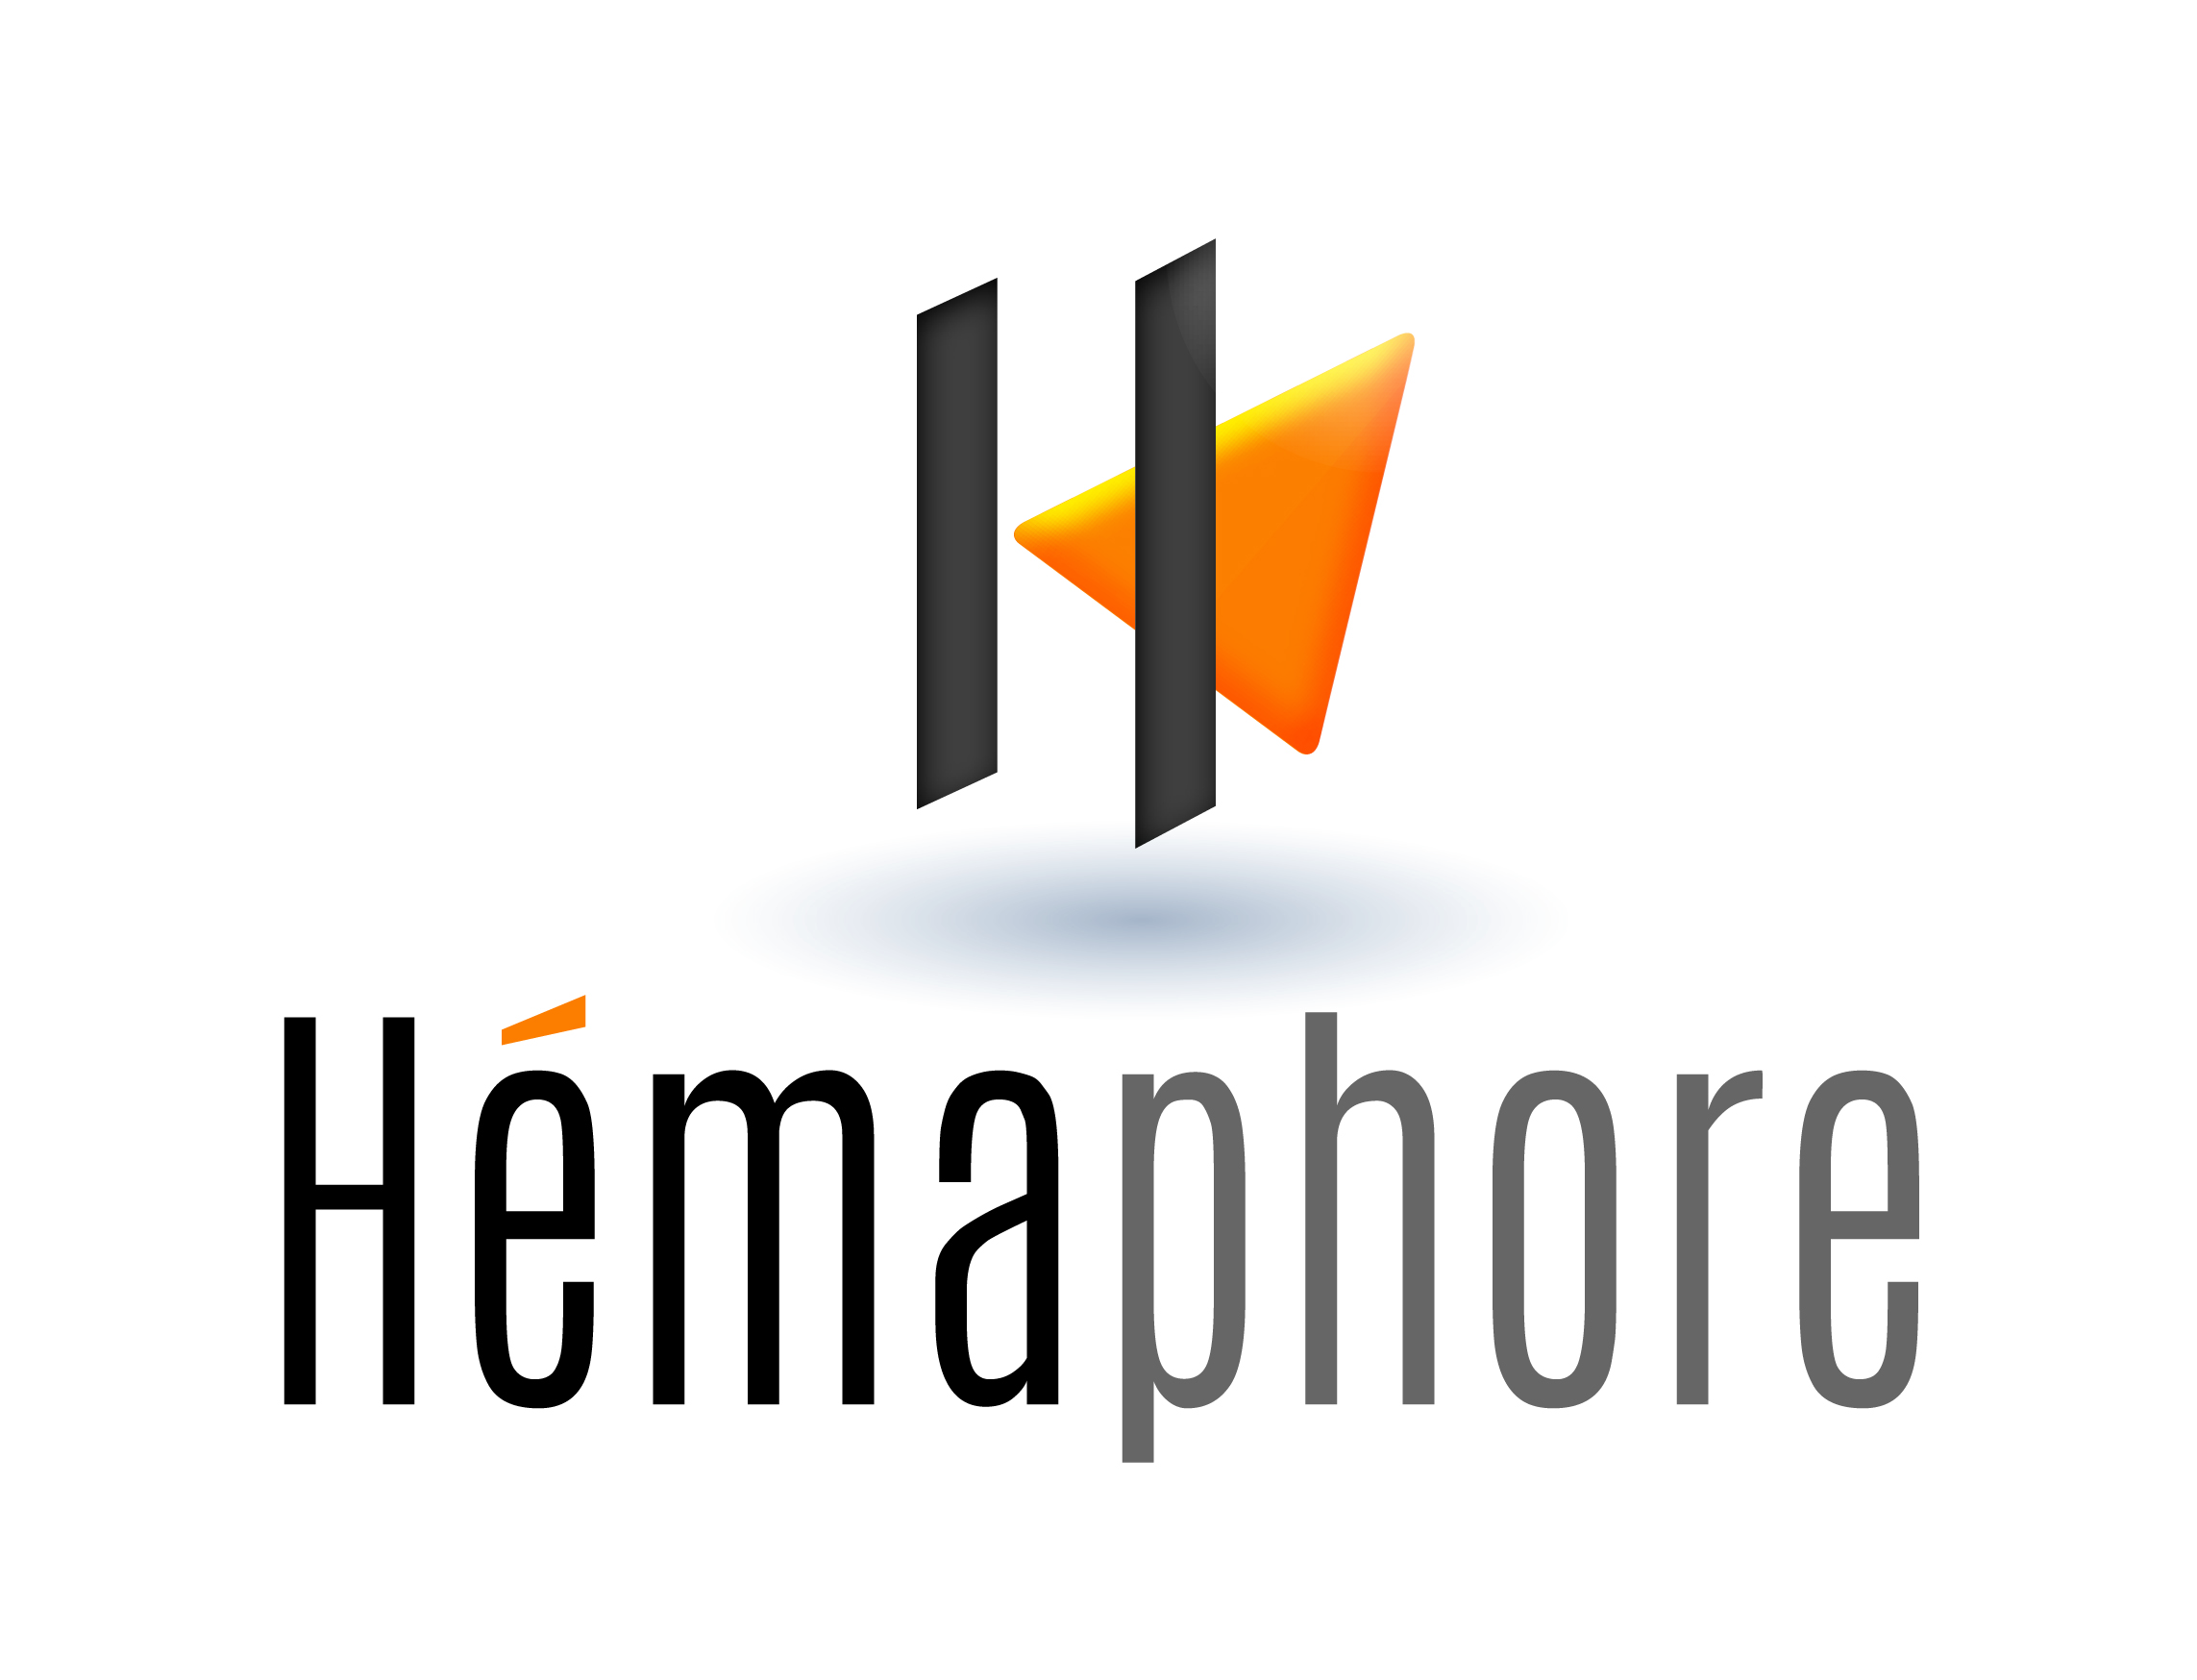 Hemaphore